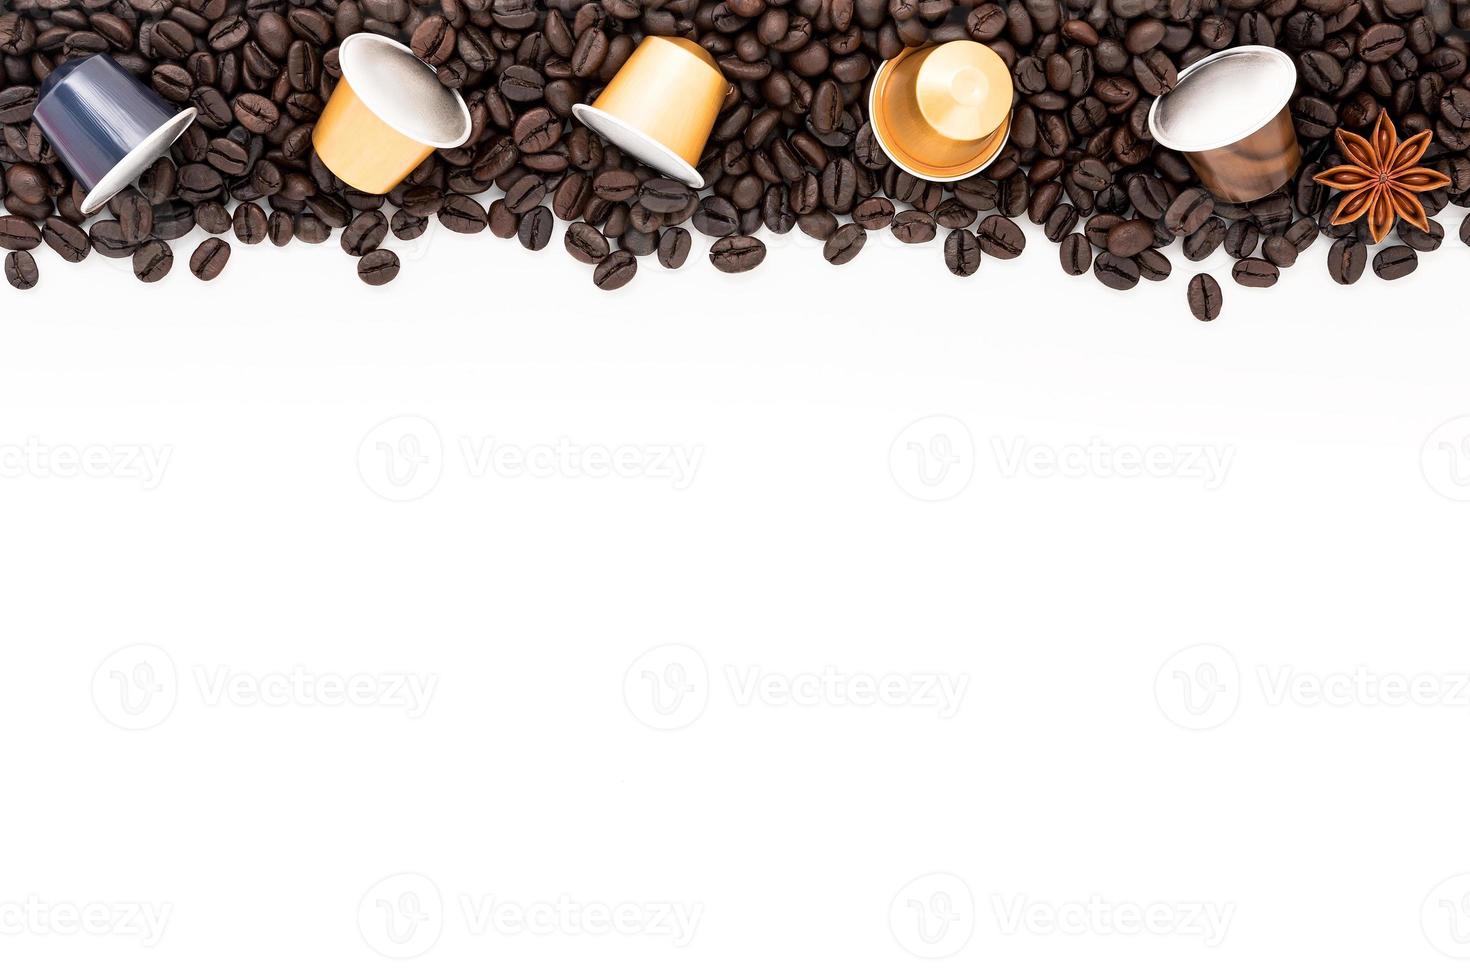 grãos de café torrados escuros configurados em fundo branco com espaço de cópia. foto